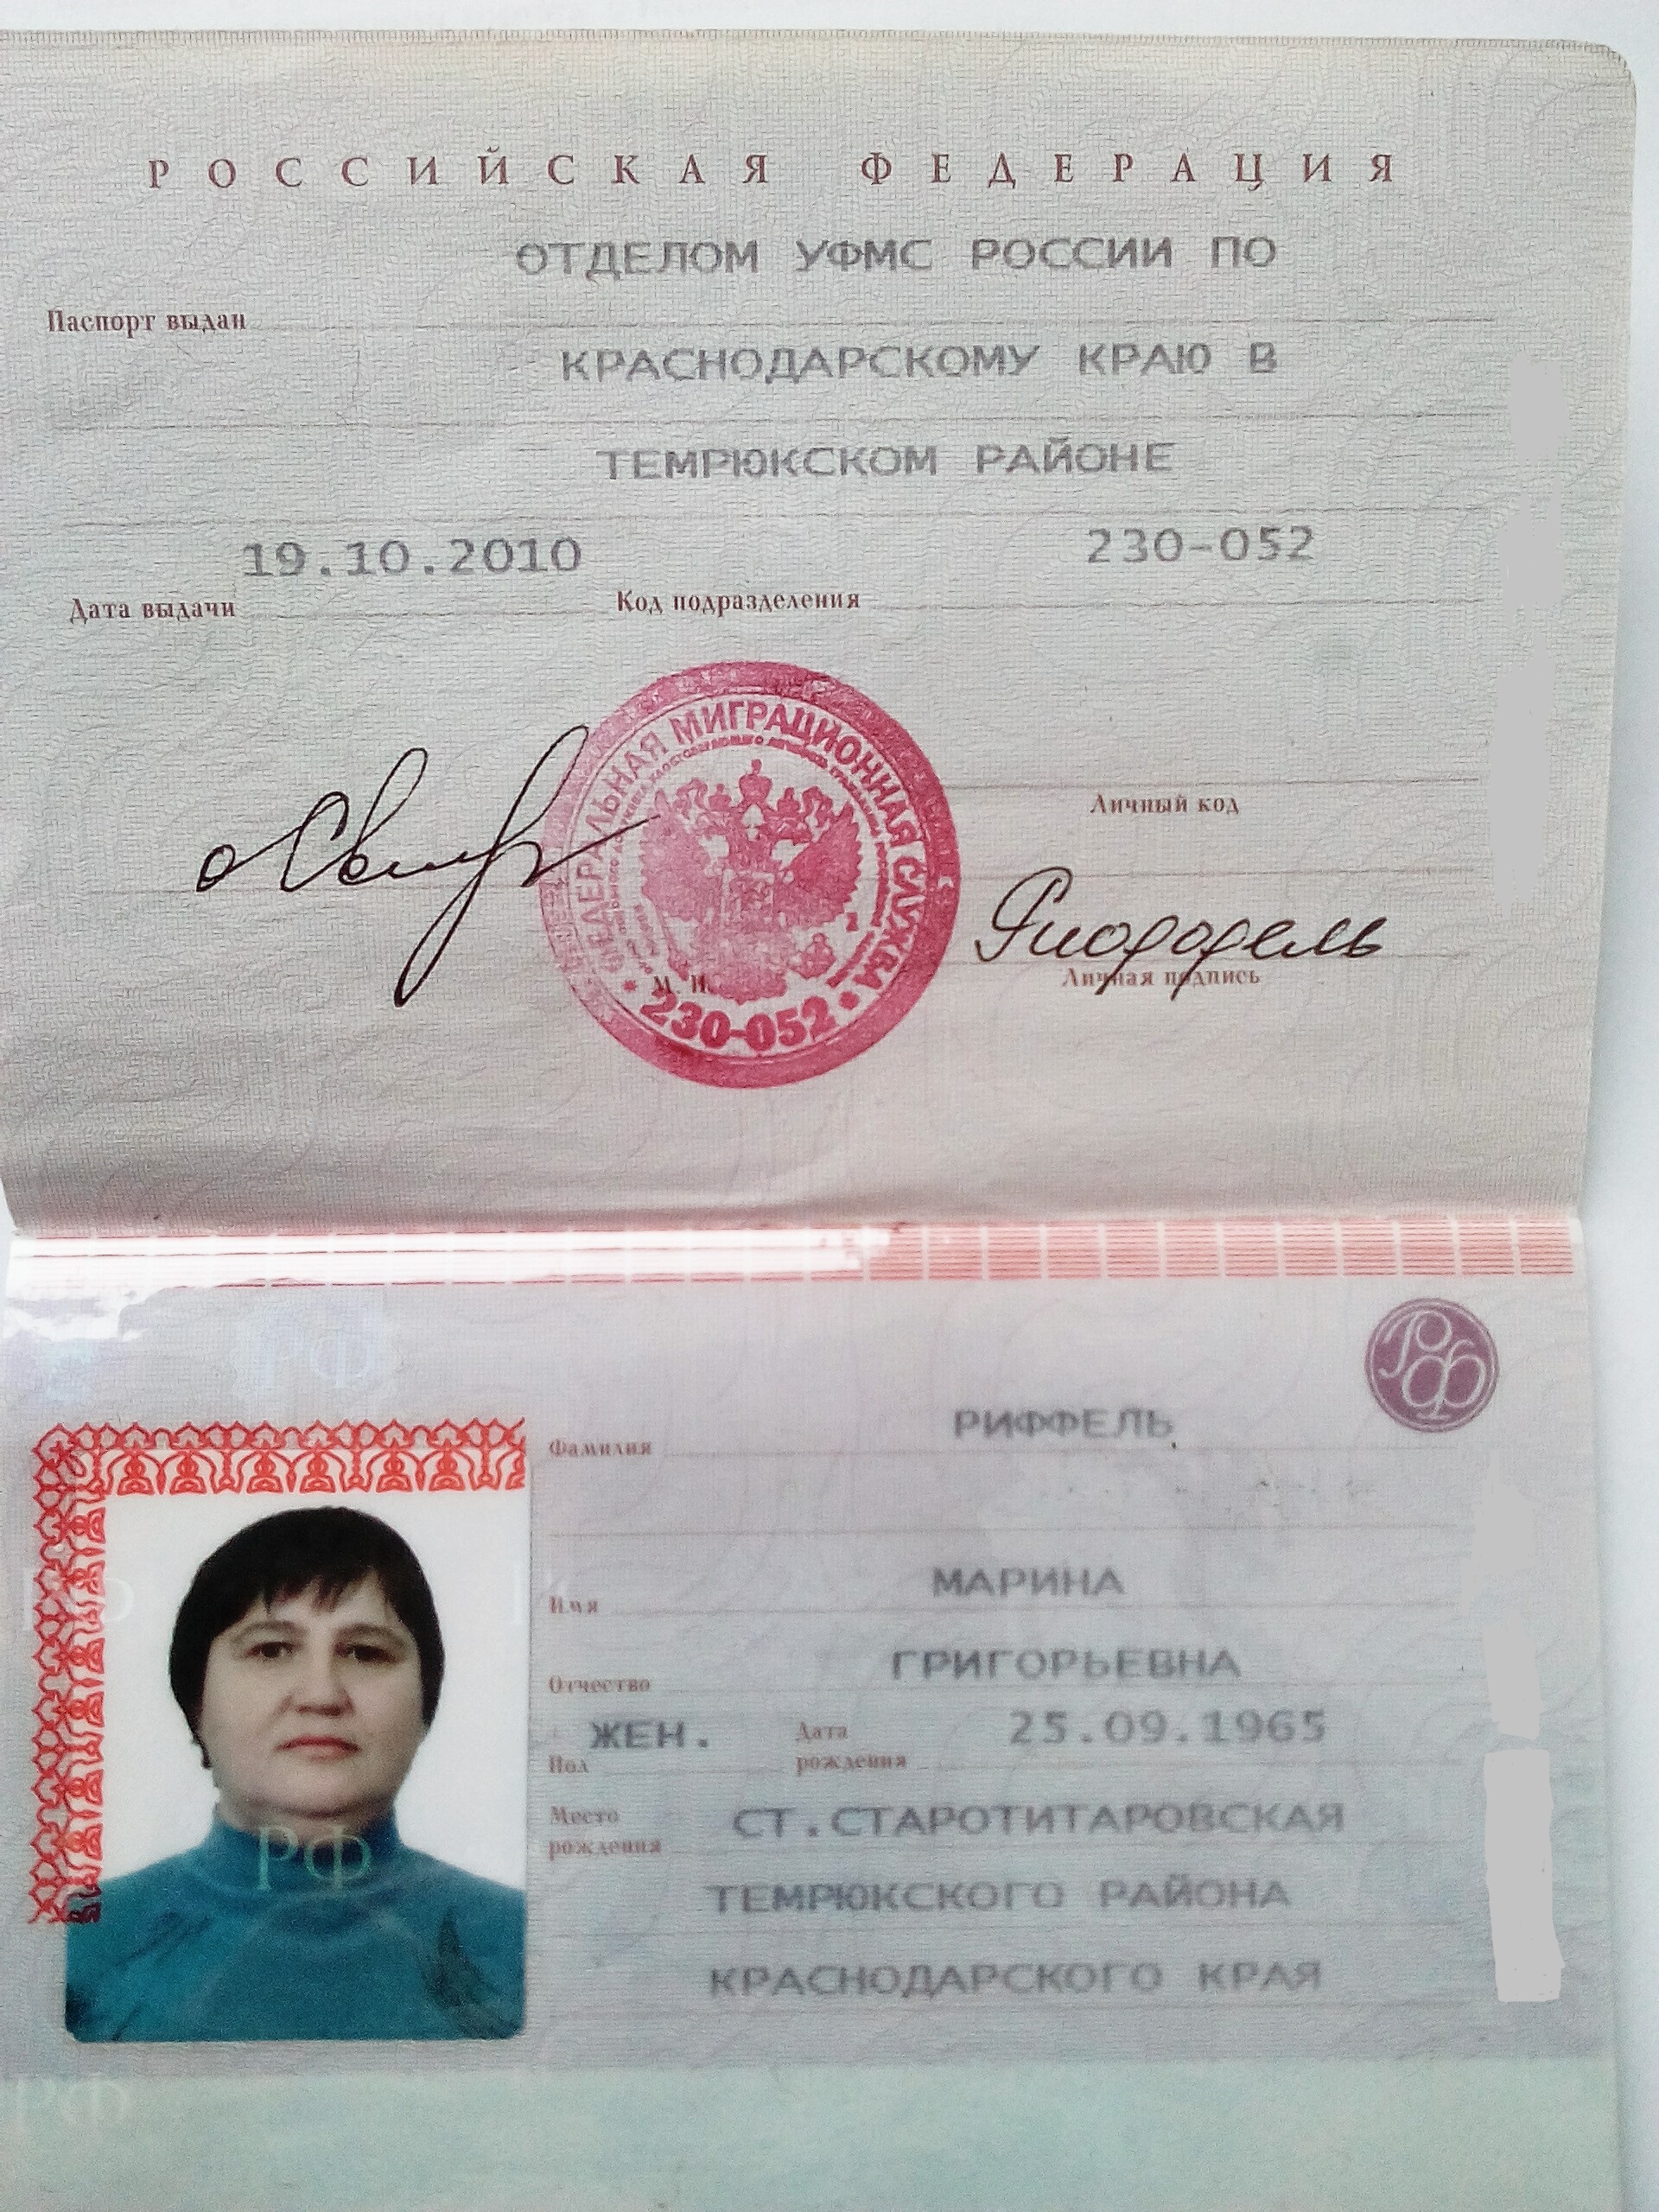 Коды паспортов краснодарского края. Код подразделения. Паспортные данные Краснодарский край.